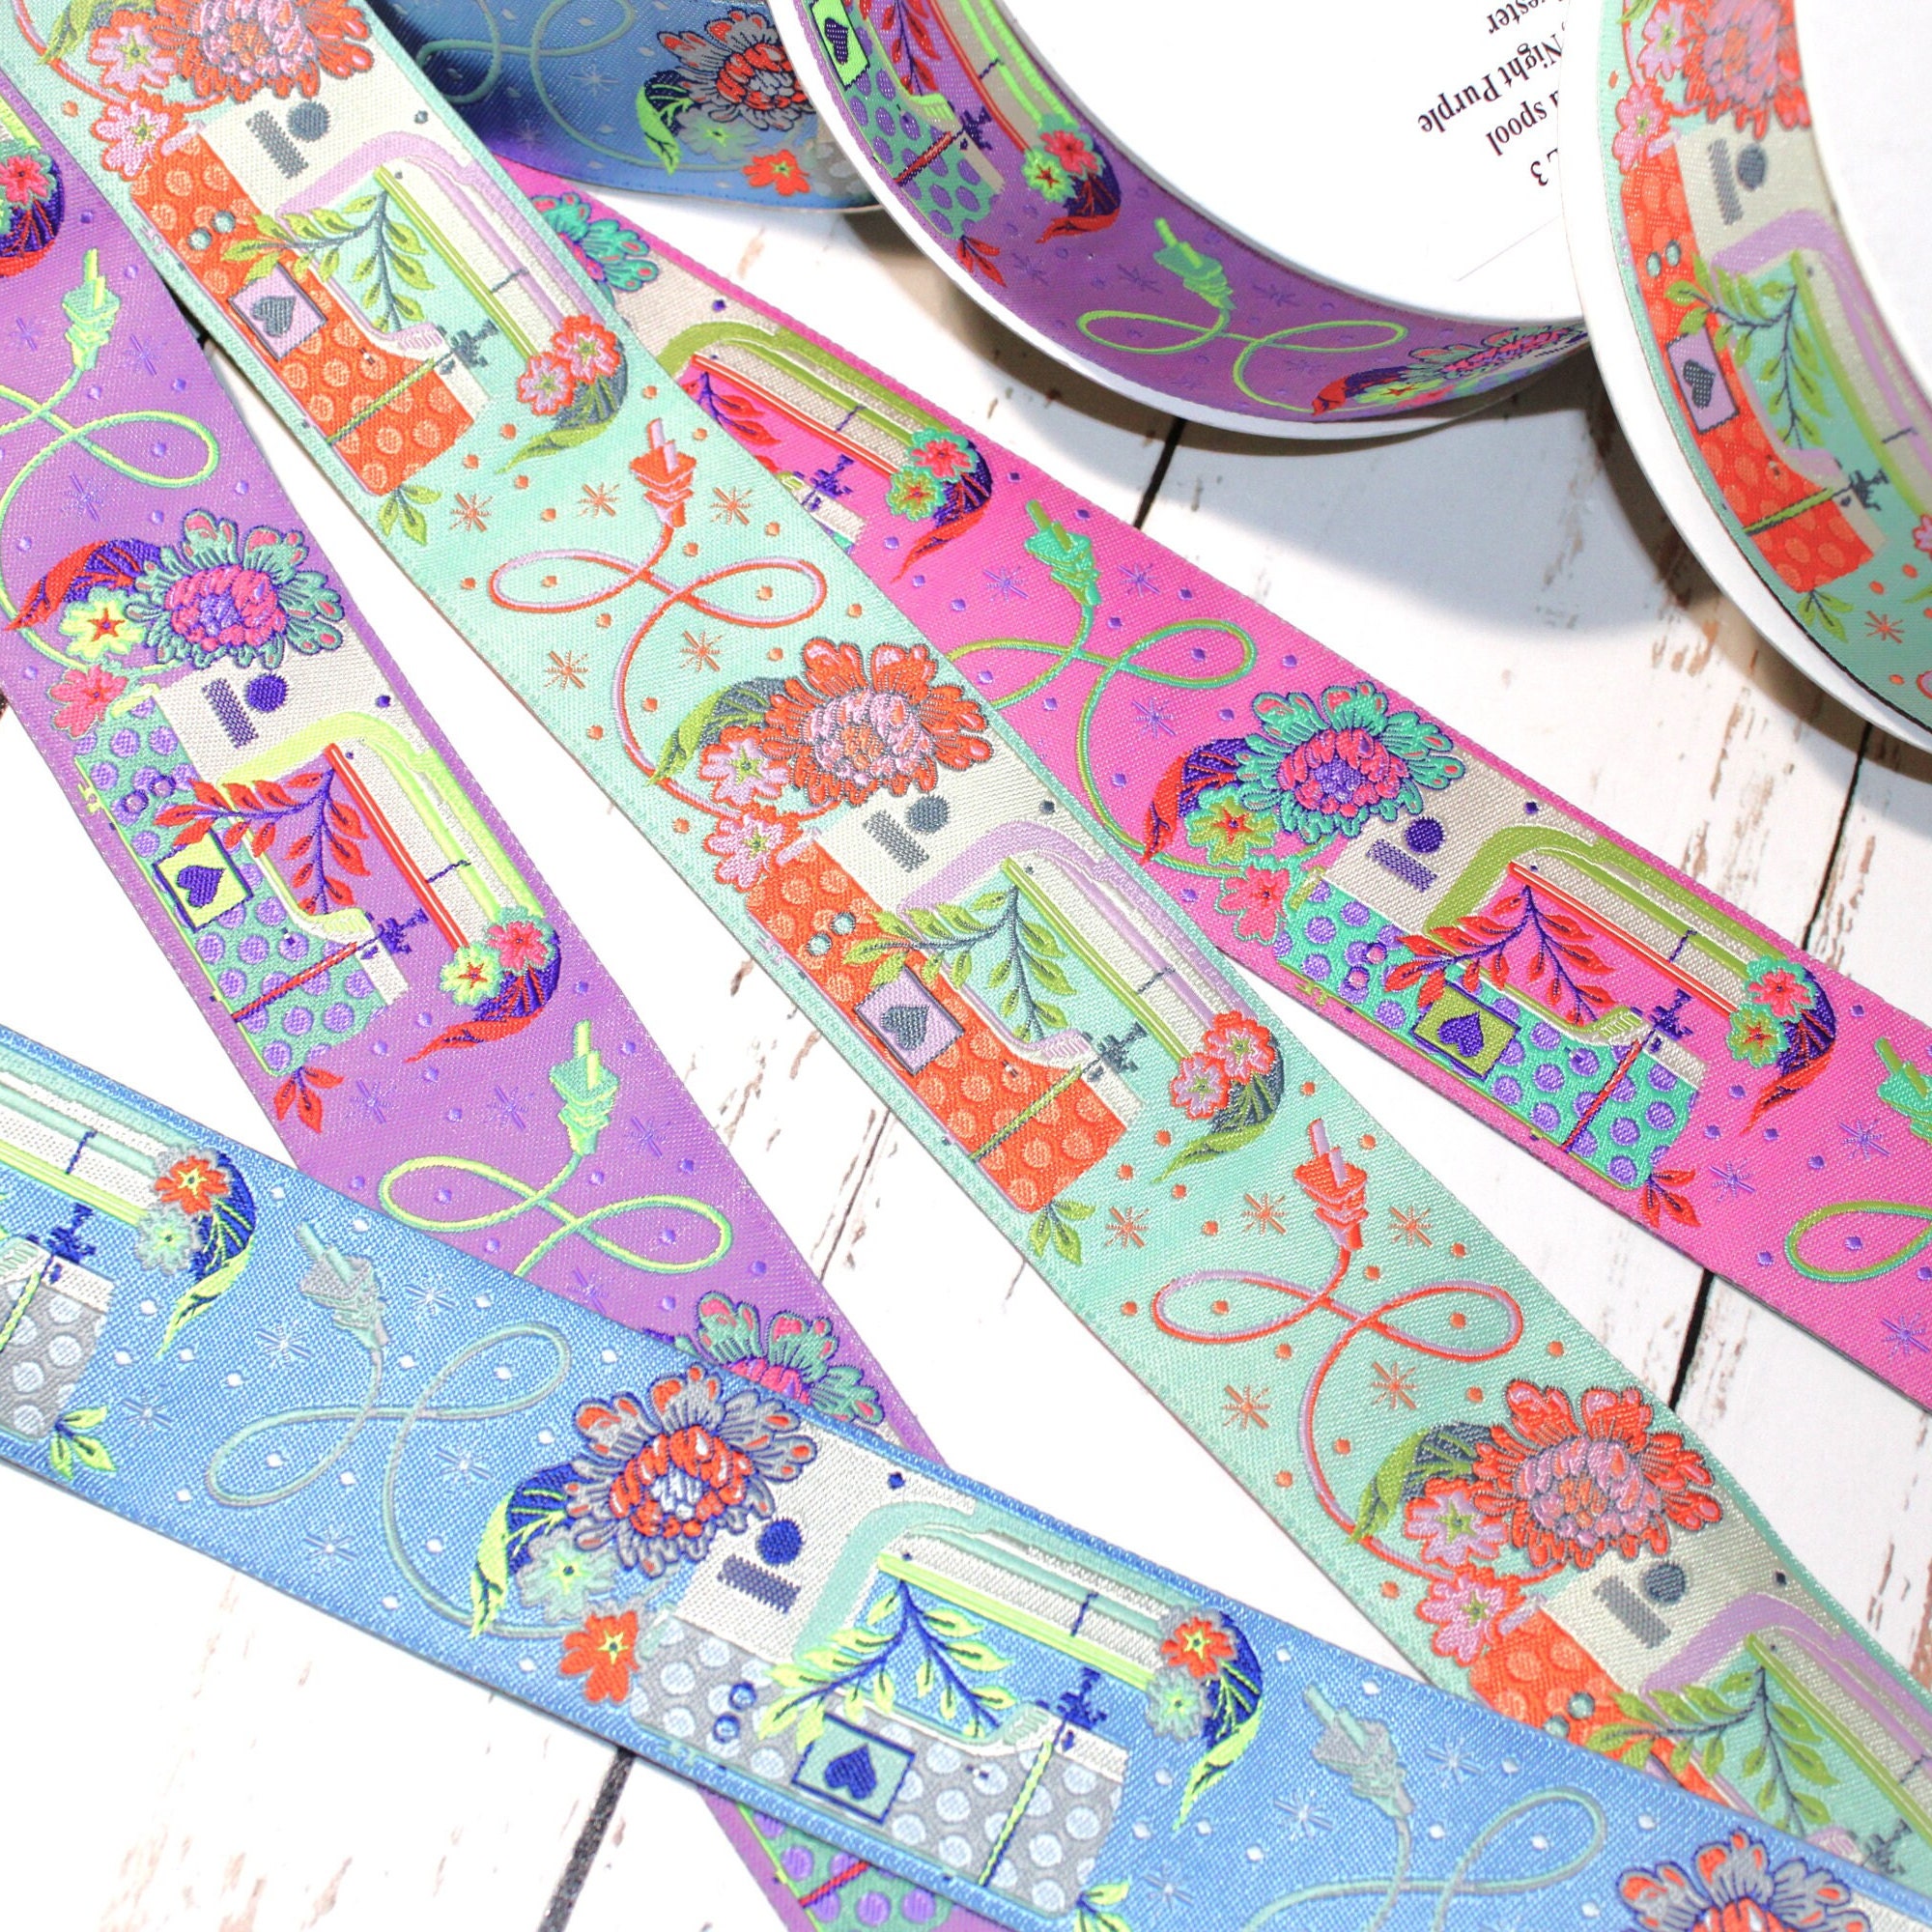 Tula Pink HomeMade Noon Designer Ribbon Pack by Renaissance Ribbons